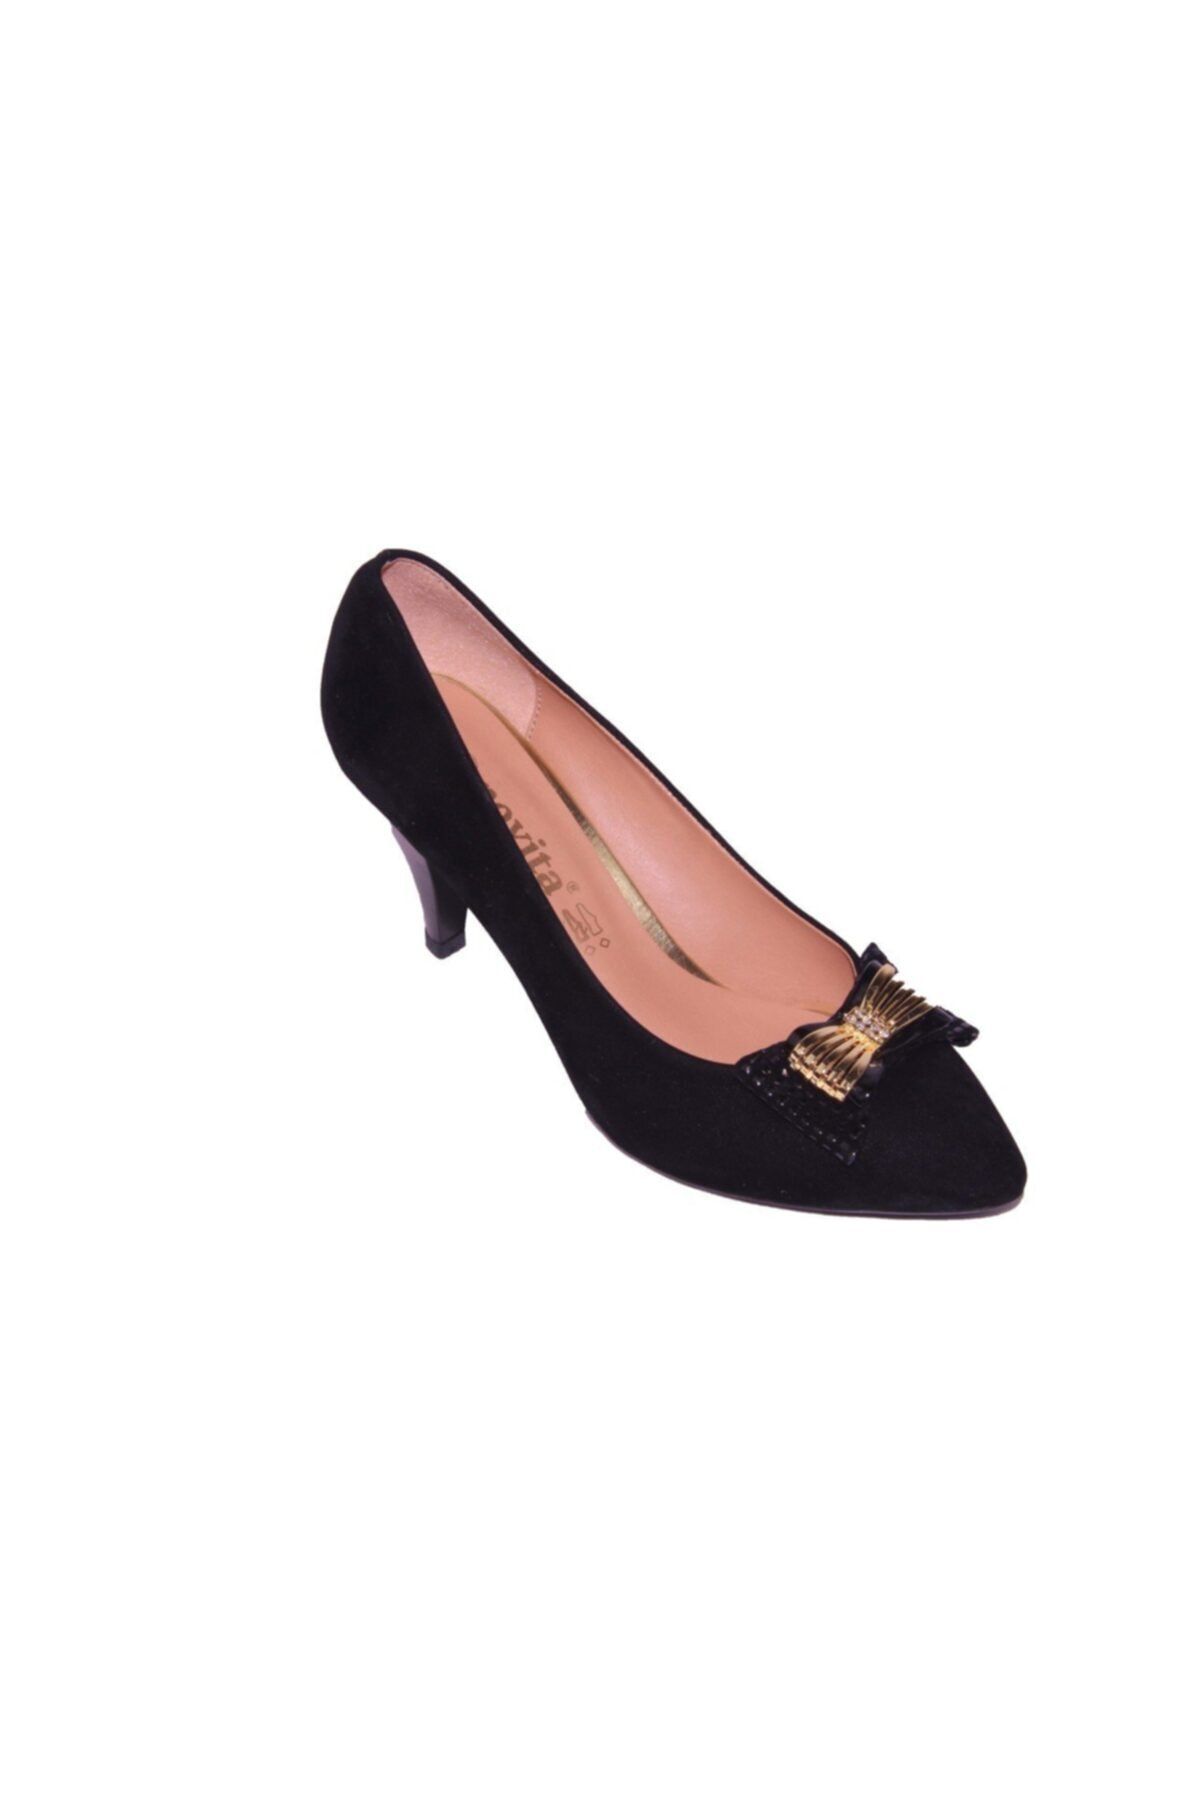 ARİNO Kadın Topuklu Stiletto Klasik Ayakkabı Siyah Nubuk